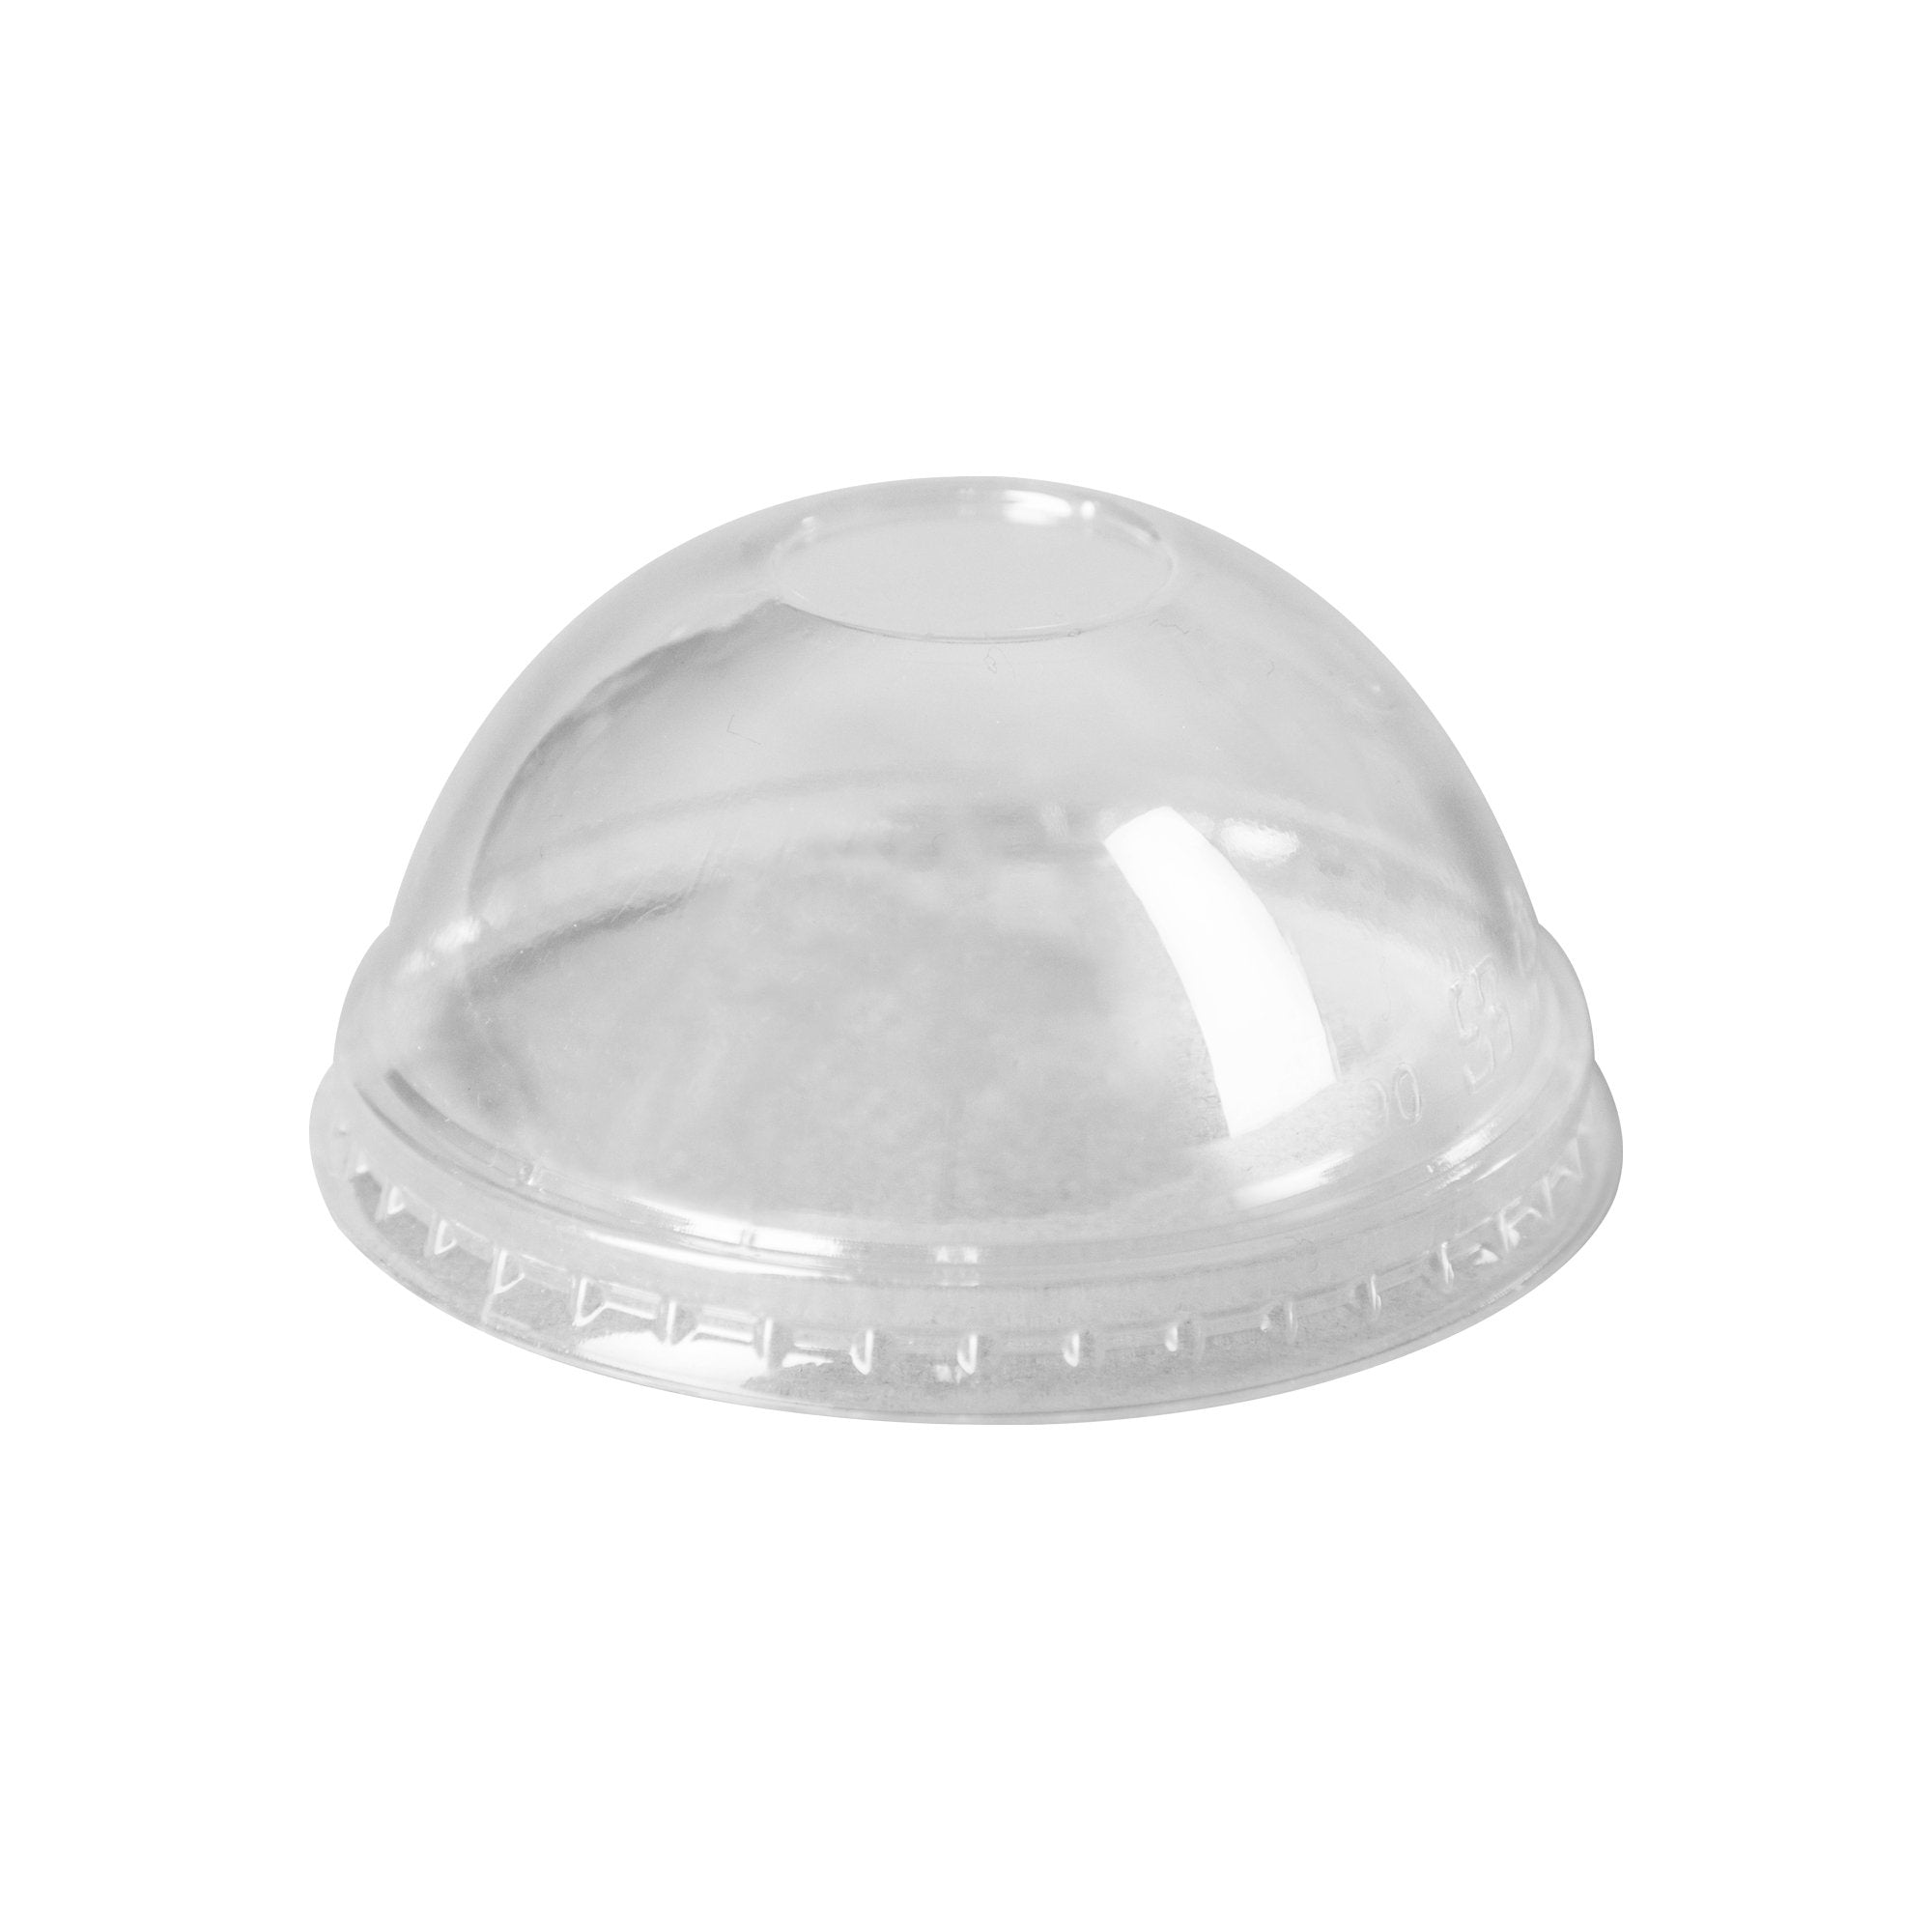 Yogurt/Soup Cup PET Dome Lid 8 oz- Clear (1000/case) - 90mm